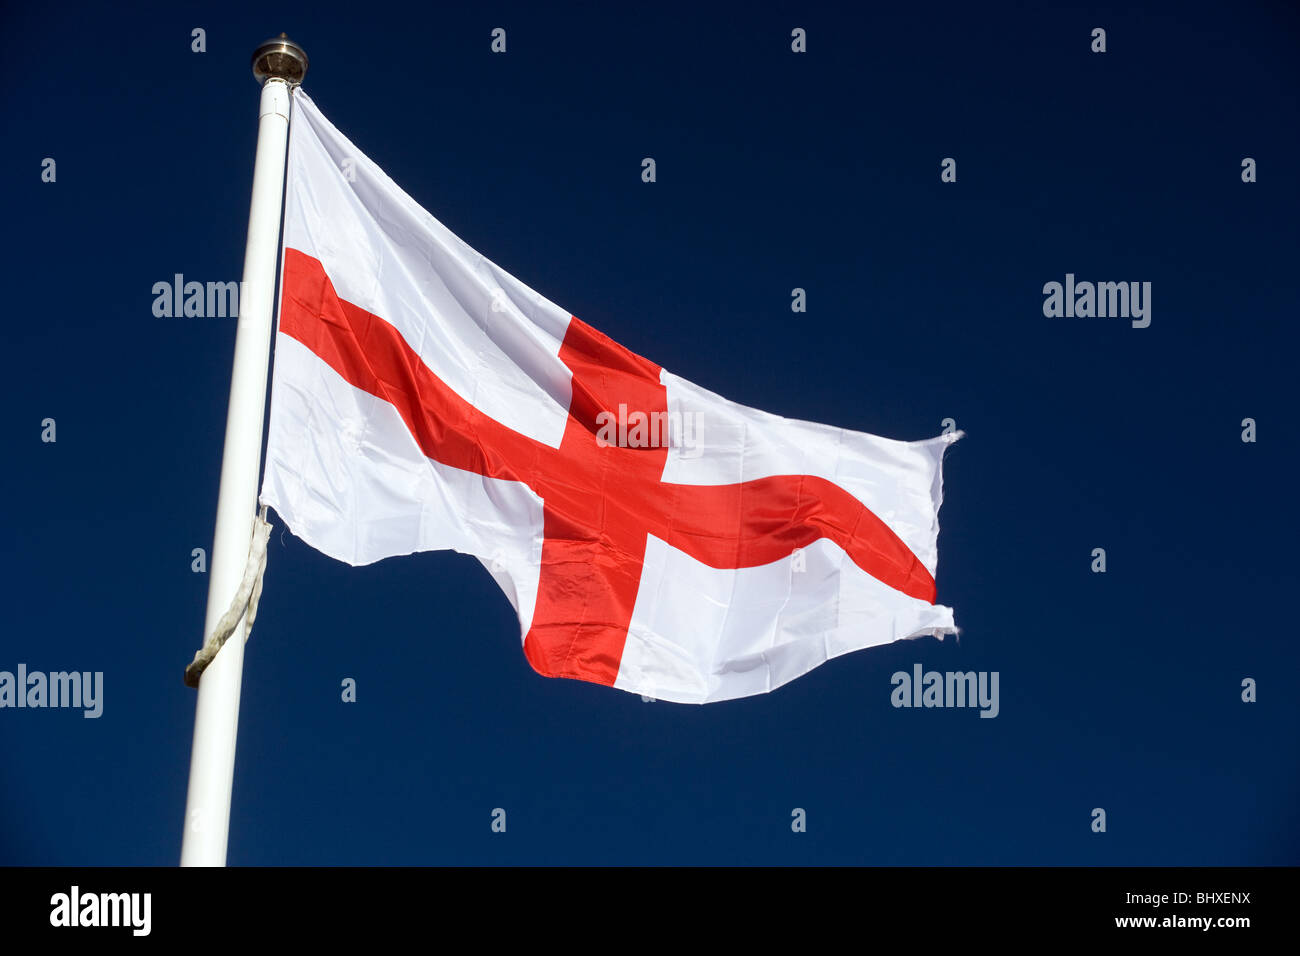 St George Flag On A Flag Pole Against A Deep Blue Sky Stock Photo